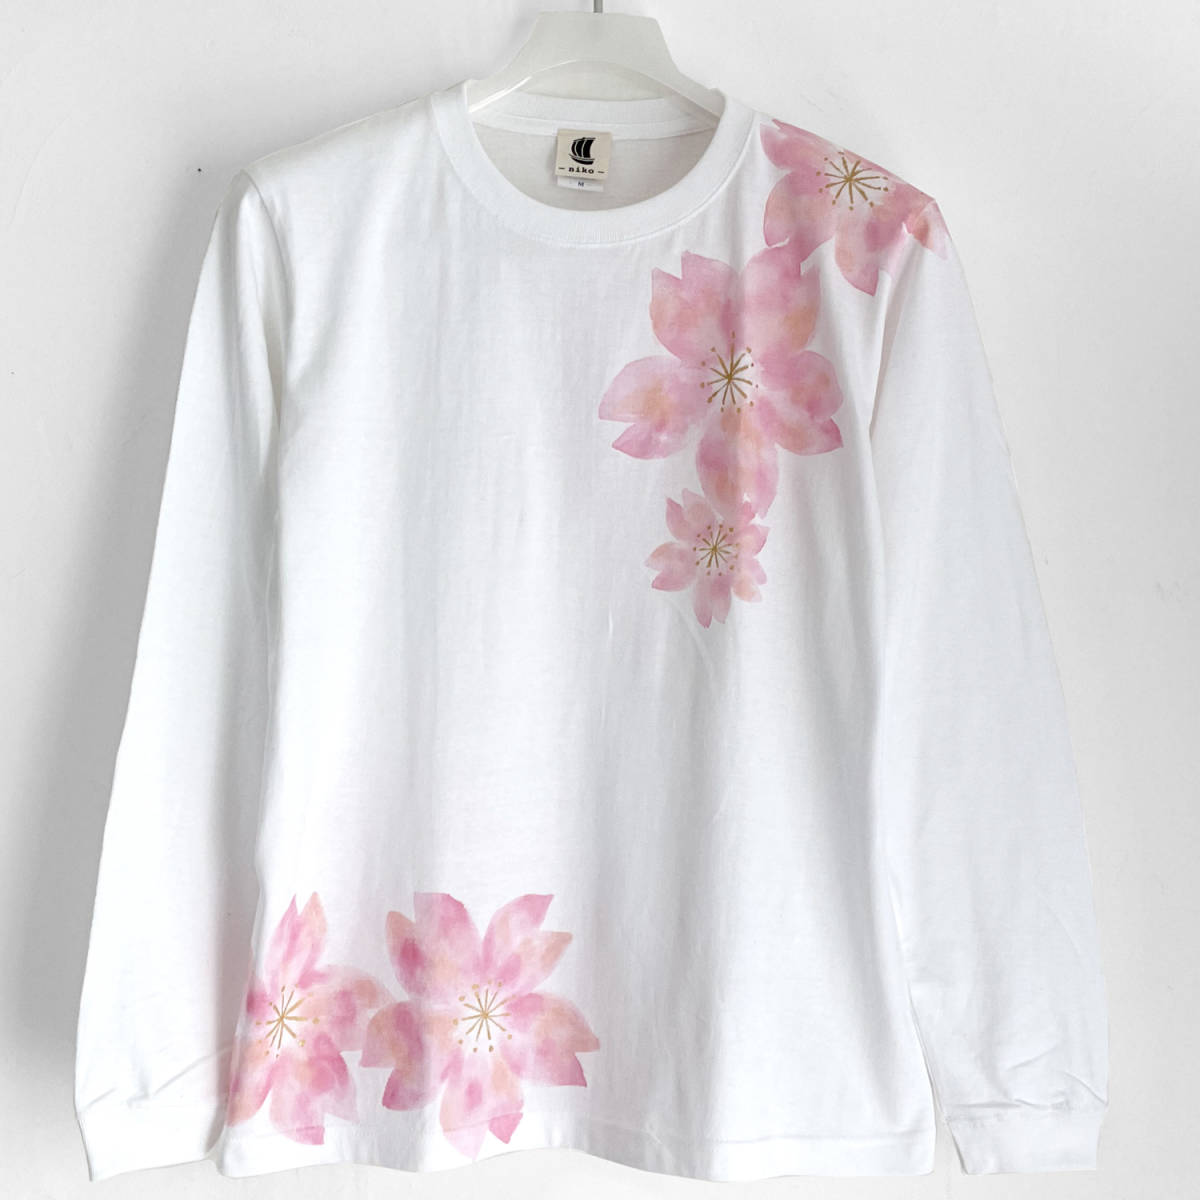 T-shirt motif fleurs de cerisier dansant Blanc Taille S T-shirt manches longues dessiné à la main avec manches côtelées Long T Motif japonais floral Rose, T-shirts, Manche longue, Petite taille